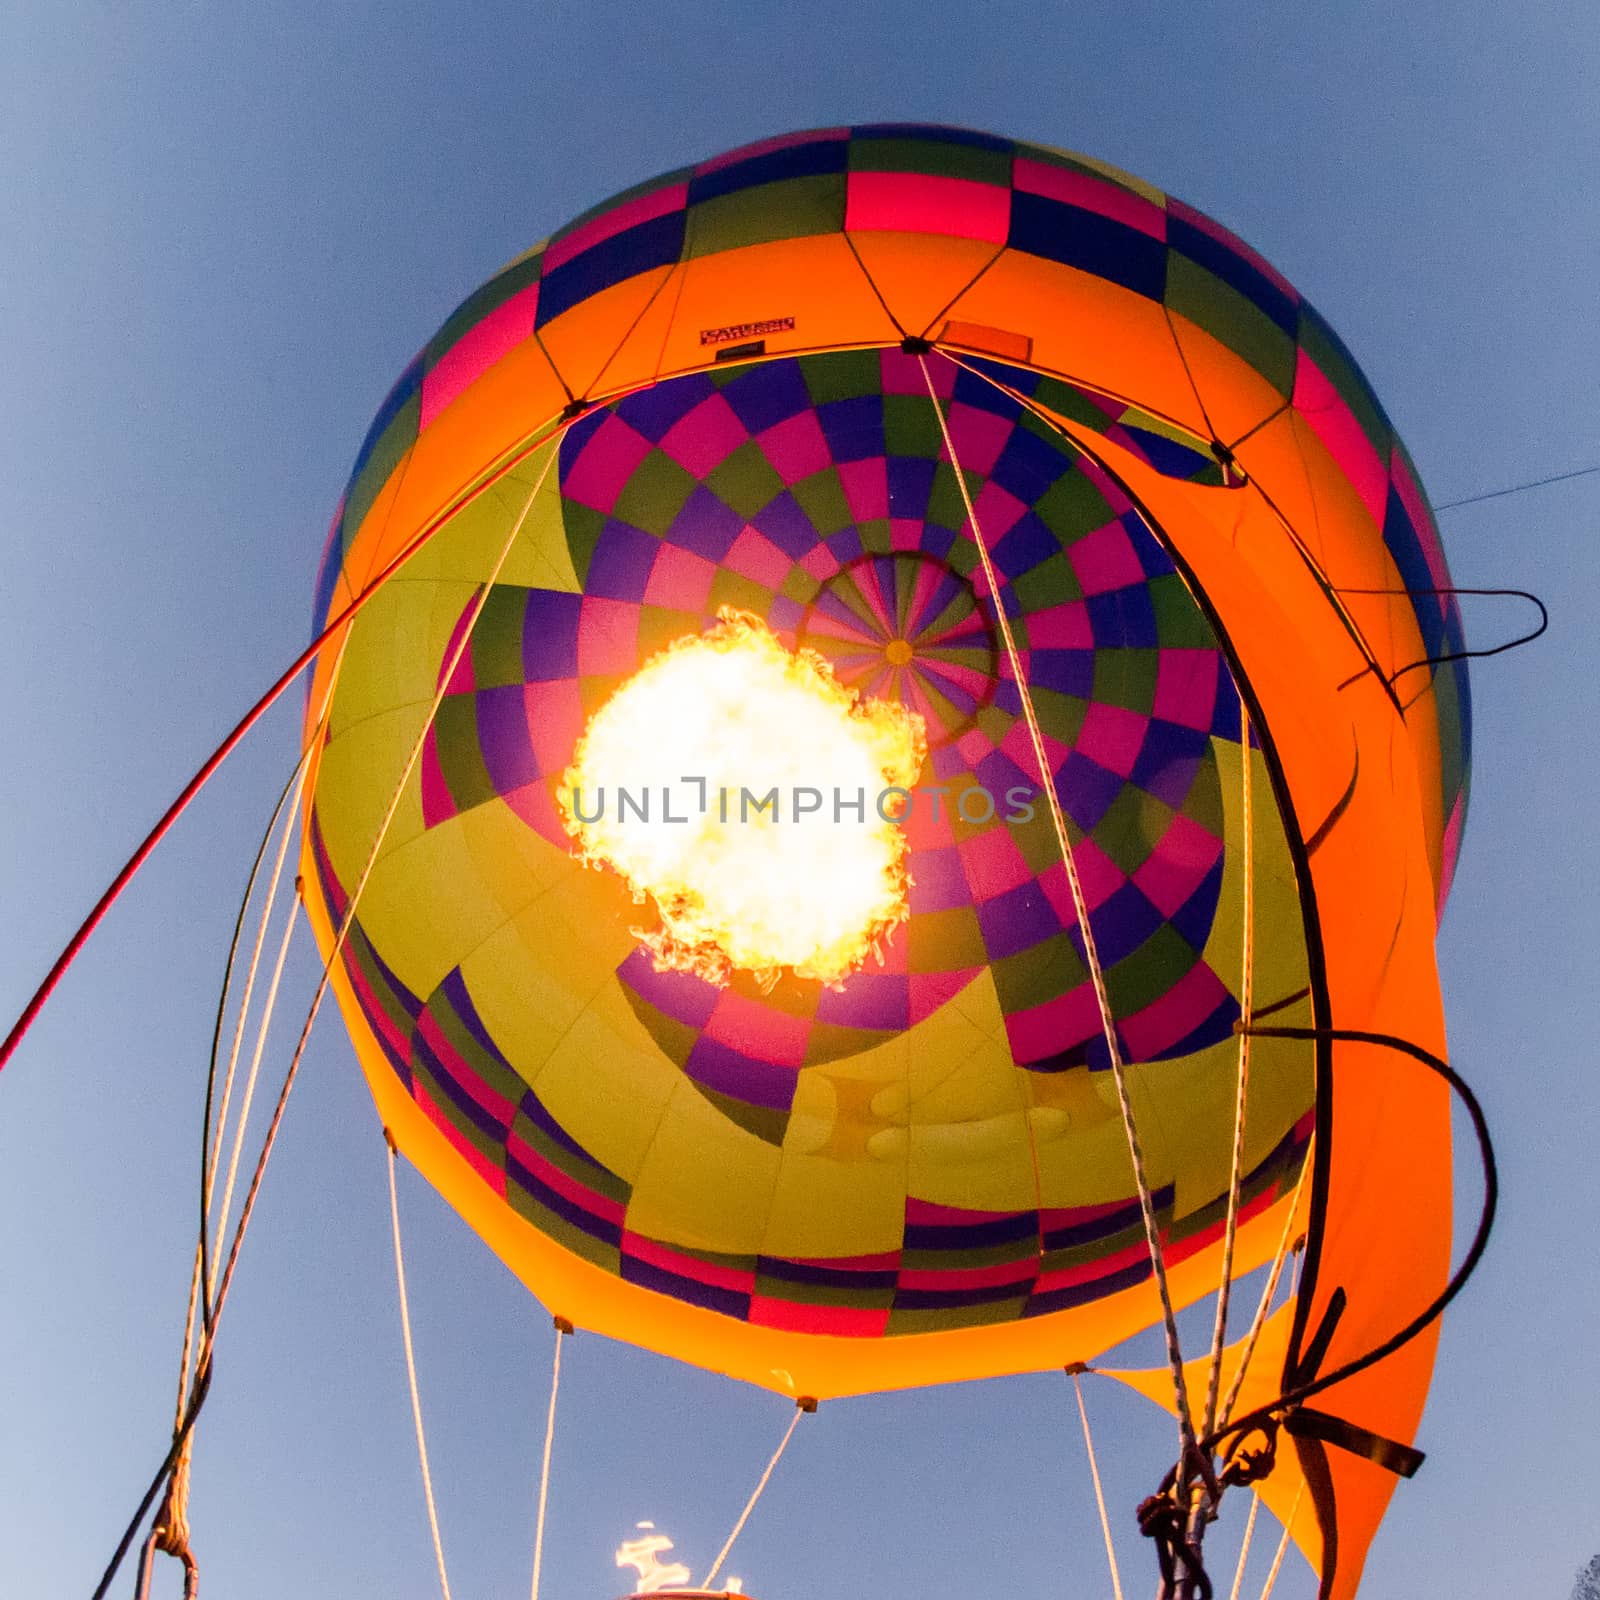 Fire heats the air inside a hot air balloon at balloon festival 